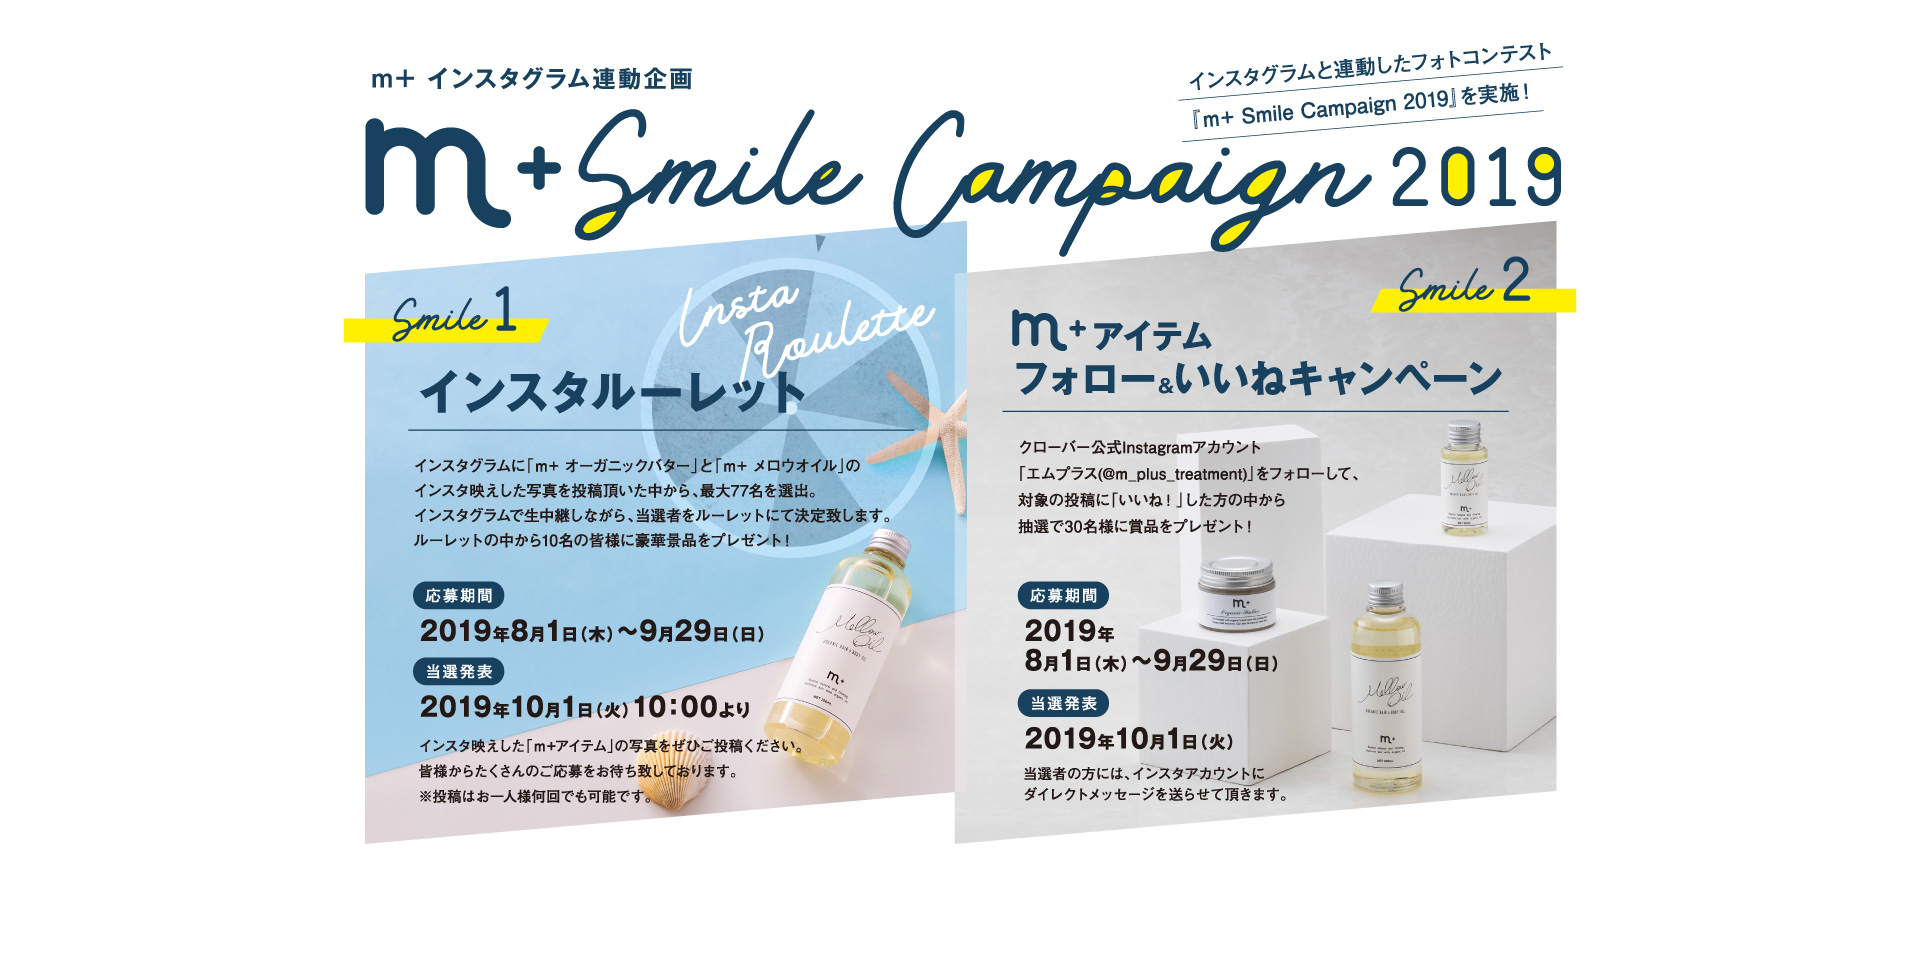 m+インスタグラム連動企画 m+ Smile Campaign 2019 インスタグラムと連動したフォトコンテスト『m+ Smile Campaign 2019』を実施！ Smile 1 インスタルーレット インスタグラムに「ｍ+ オーガニックバター」と「ｍ+ メロウオイル」のインスタ映えした写真を投稿頂いた中から、最大77名を選出。インスタグラムで生中継しながら、当選者をルーレットにて決定致します。ルーレットの中から10名の皆様に豪華景品をプレゼント！ 応募期間：2019年8月1日（木）～9月29日（日）、当選発表：2019年10月1日（火）10：00より　［インスタ映えした「ｍ+アイテム」の写真をぜひご投稿ください。皆様からたくさんのご応募をお待ち致しております。※投稿はお一人様何回でも可能です。］　Smile2 m+アイテム フォロー＆いいねキャンペーン　クローバー公式Instagramアカウント「エムプラス(@m_plus_treatment)」をフォローして、対象の投稿に「いいね！」した方の中から抽選で30名様に賞品をプレゼント！応募期間：2019年8月1日（木）～9月29日（日）、当選発表：2019年10月1日（火）当選者の方には、インスタアカウントにダイレクトメッセージを送らせて頂きます。